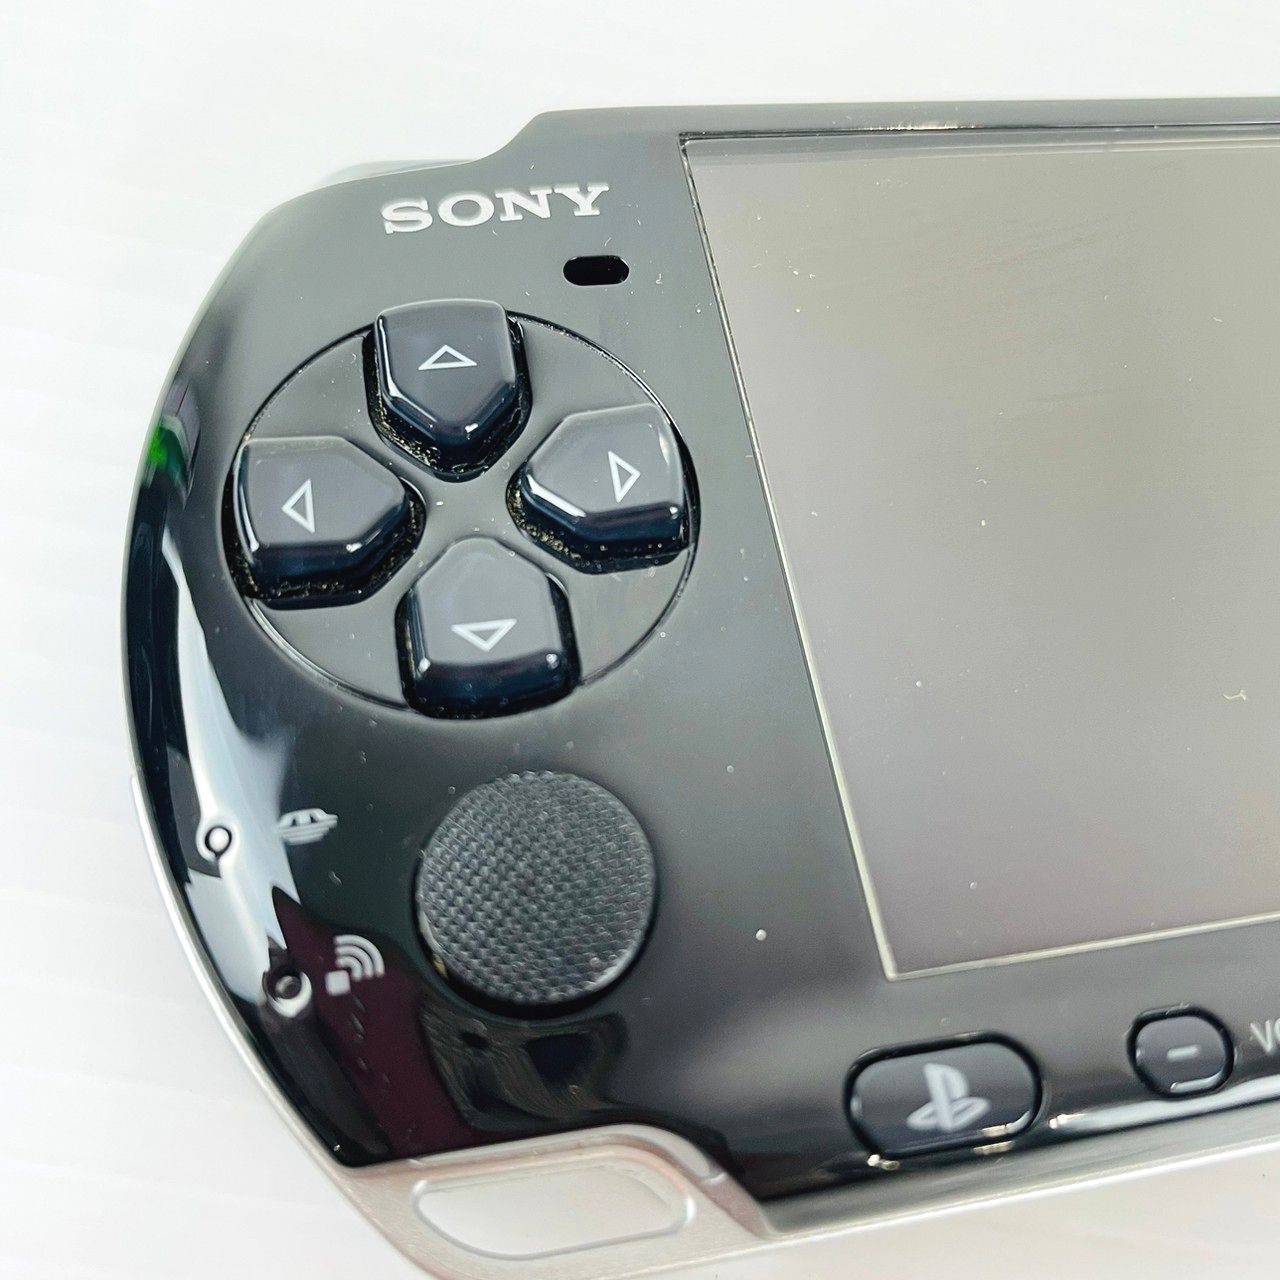 SONY プレイステーションポータブル PSP-3000 バリューパック 黒